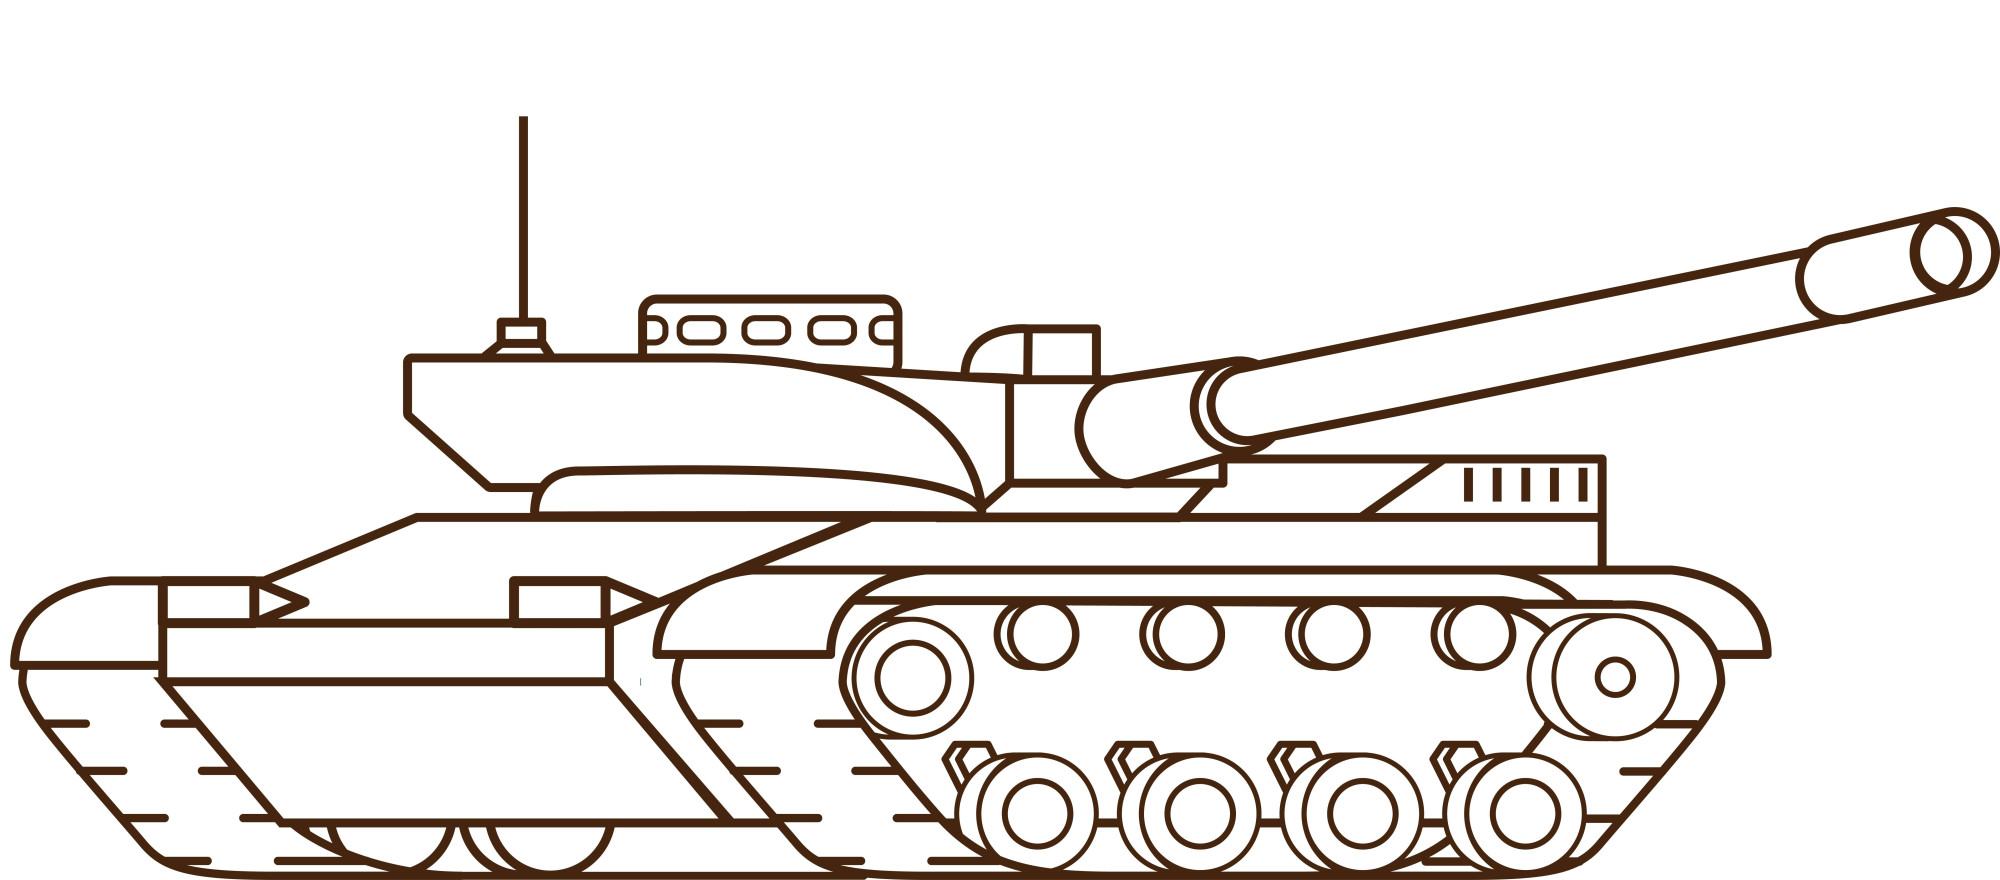 Раскраска для детей: атакующий танк